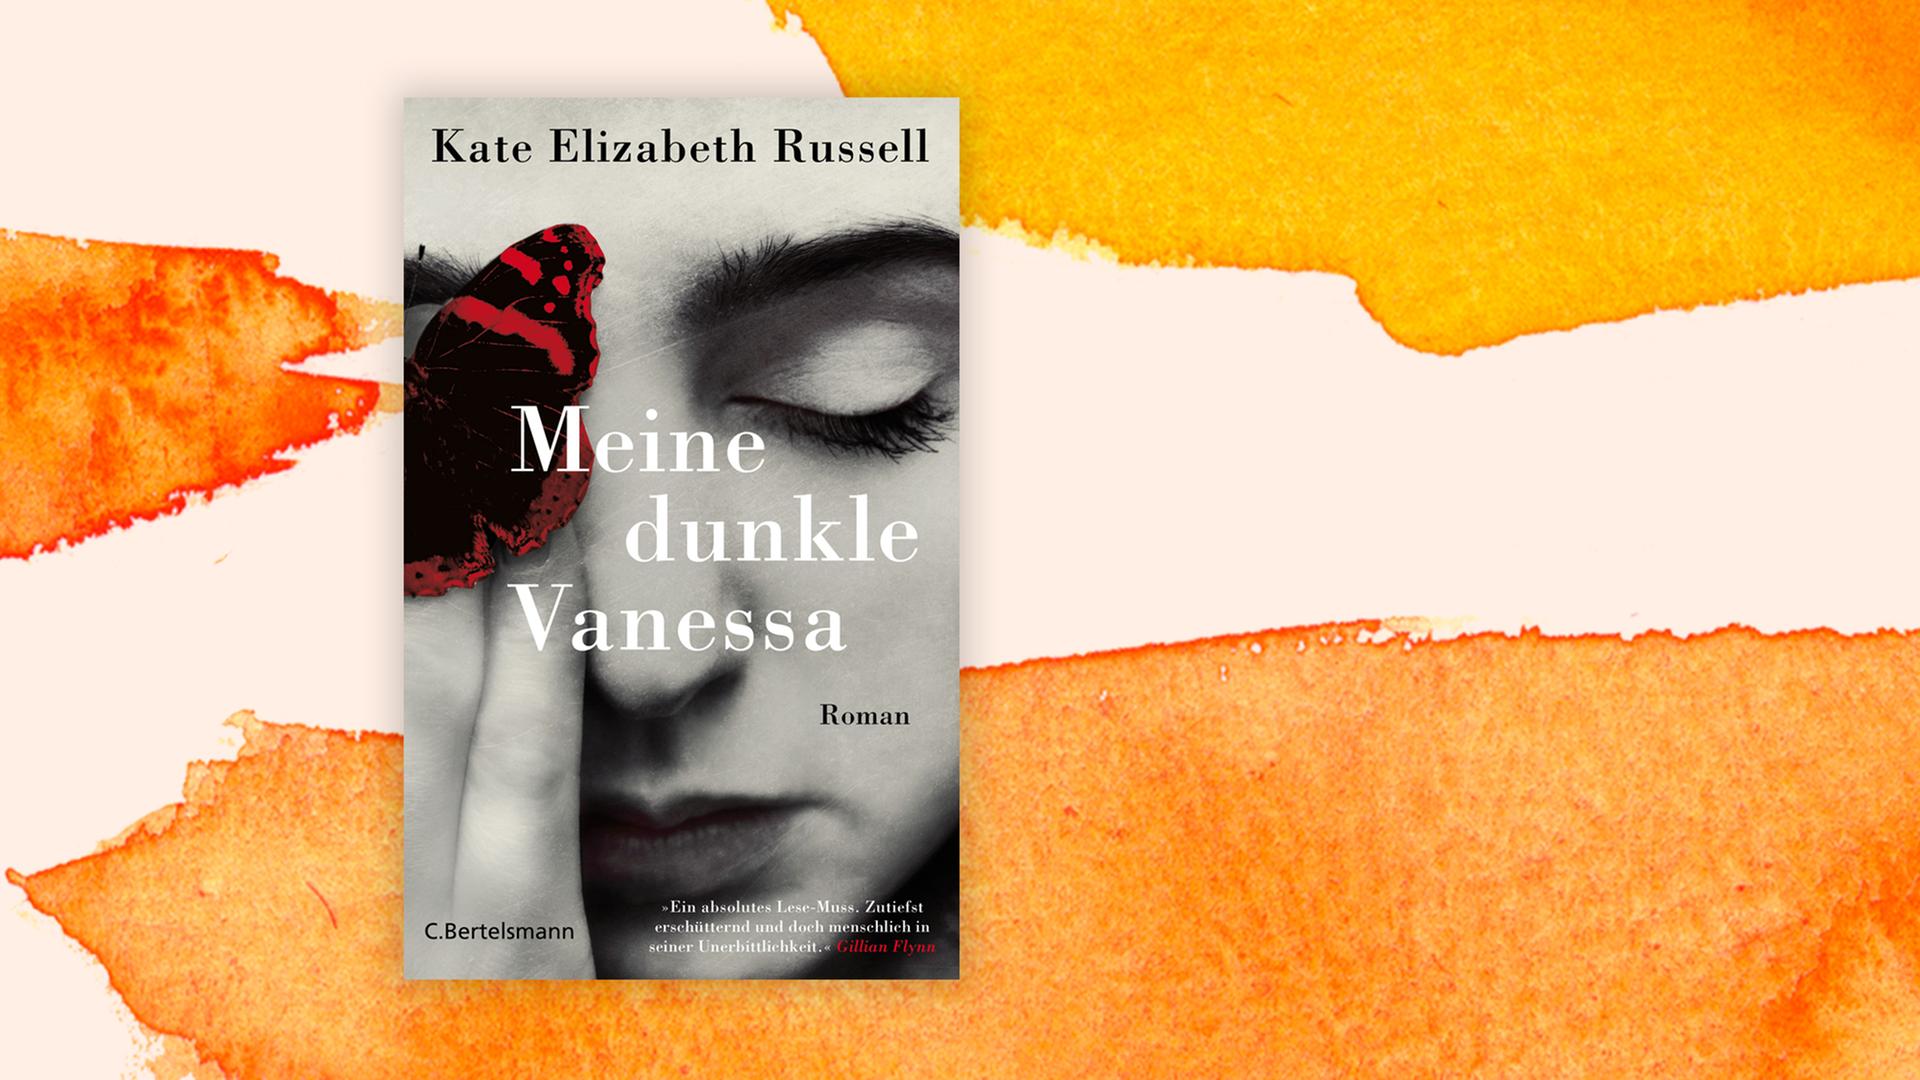 Buchcover "Meine dunkle Vanessa" von Kate Elizabeth Russell vor einem grafischen Hintergrund